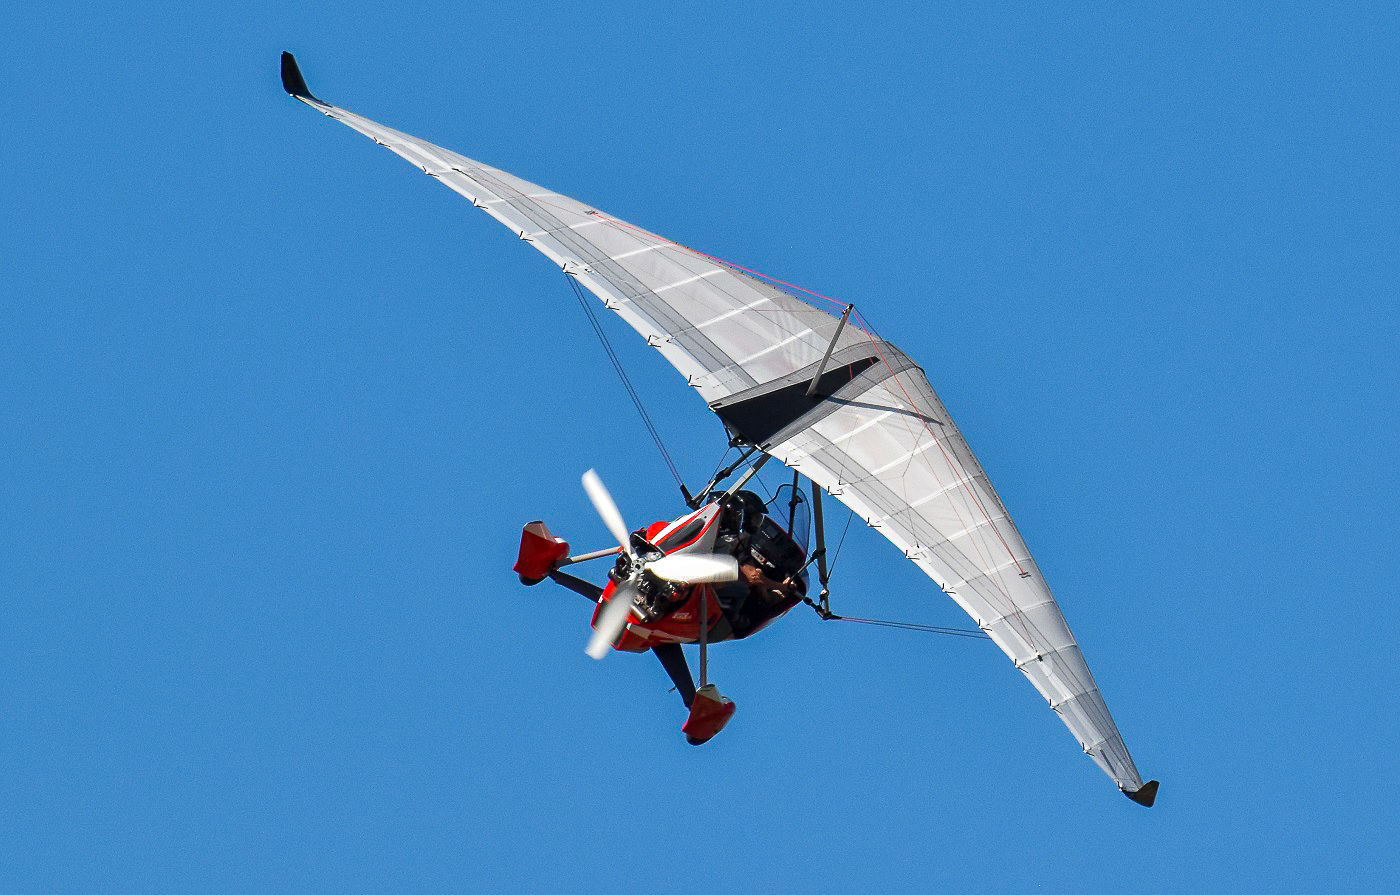 fly/en-vol-bionix2-tanarg-neo-en-vol-in-fly-ulm-pendulaire-ultralight-trike-wings-6.jpg